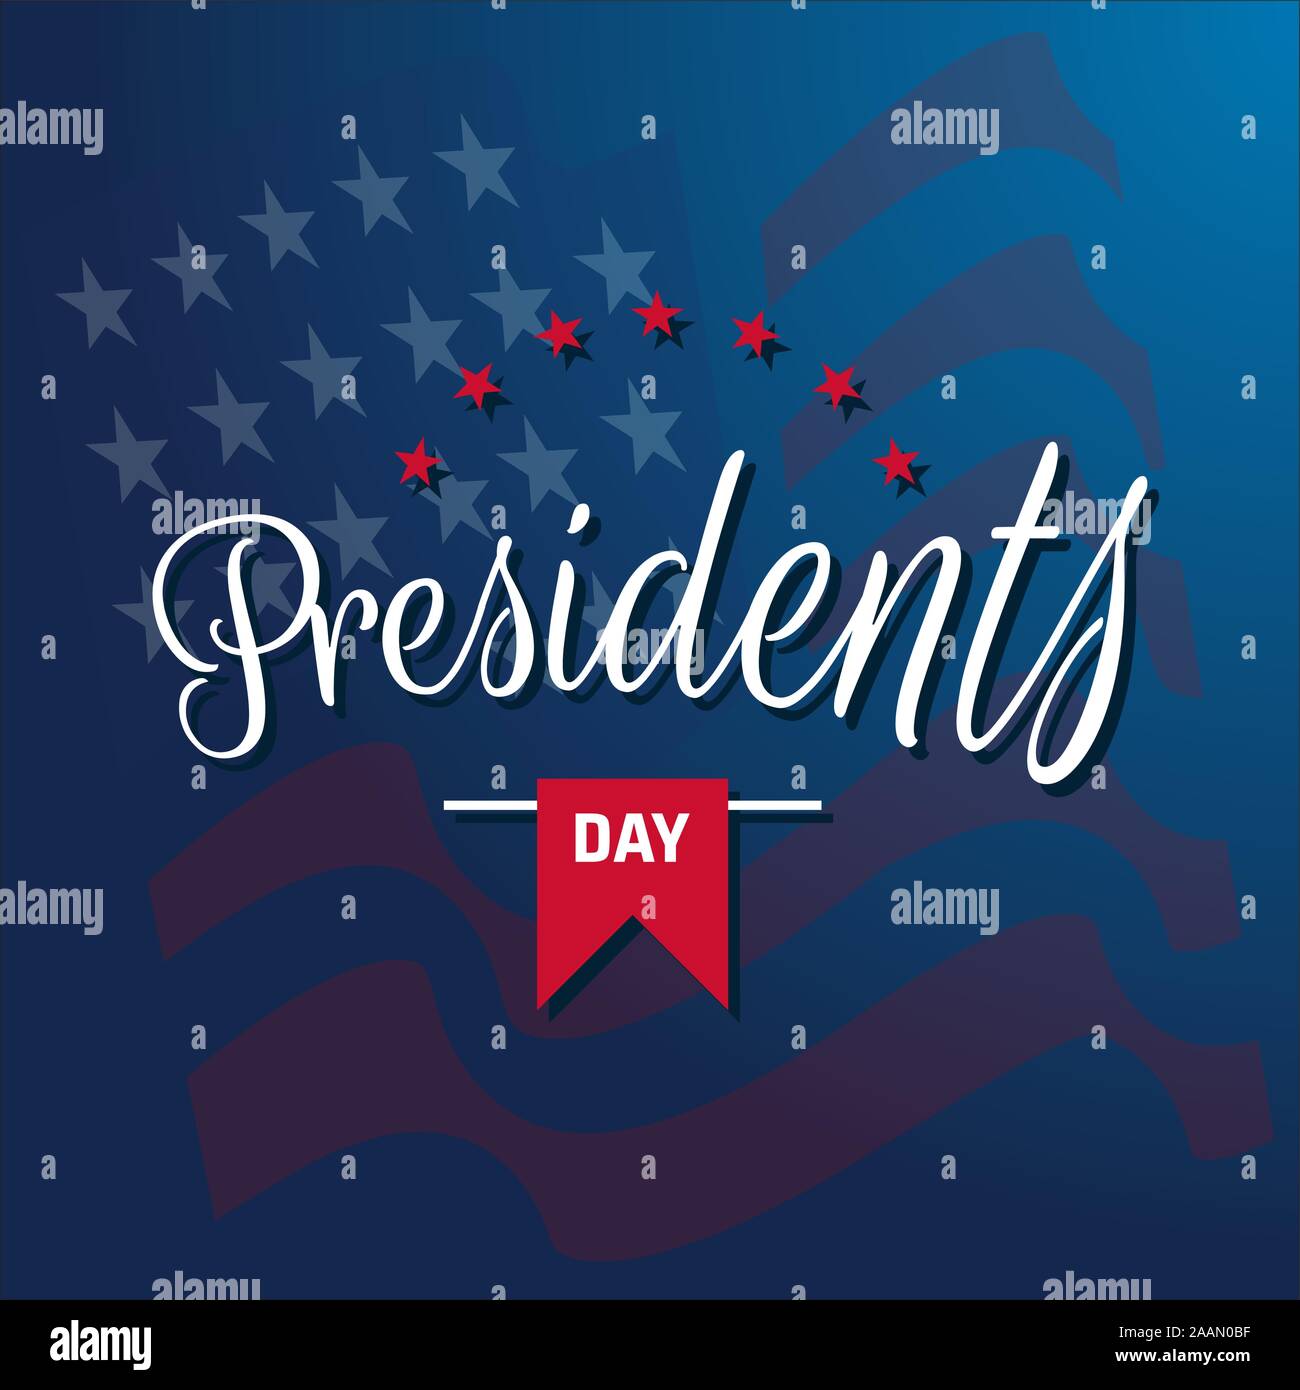 Happy Präsidenten Day text Beschriftung für Präsidenten Day in den USA Vector Illustration Grafik Design. US-Präsident Feier kalligrafischen Hand des gezeichnet Stock Vektor